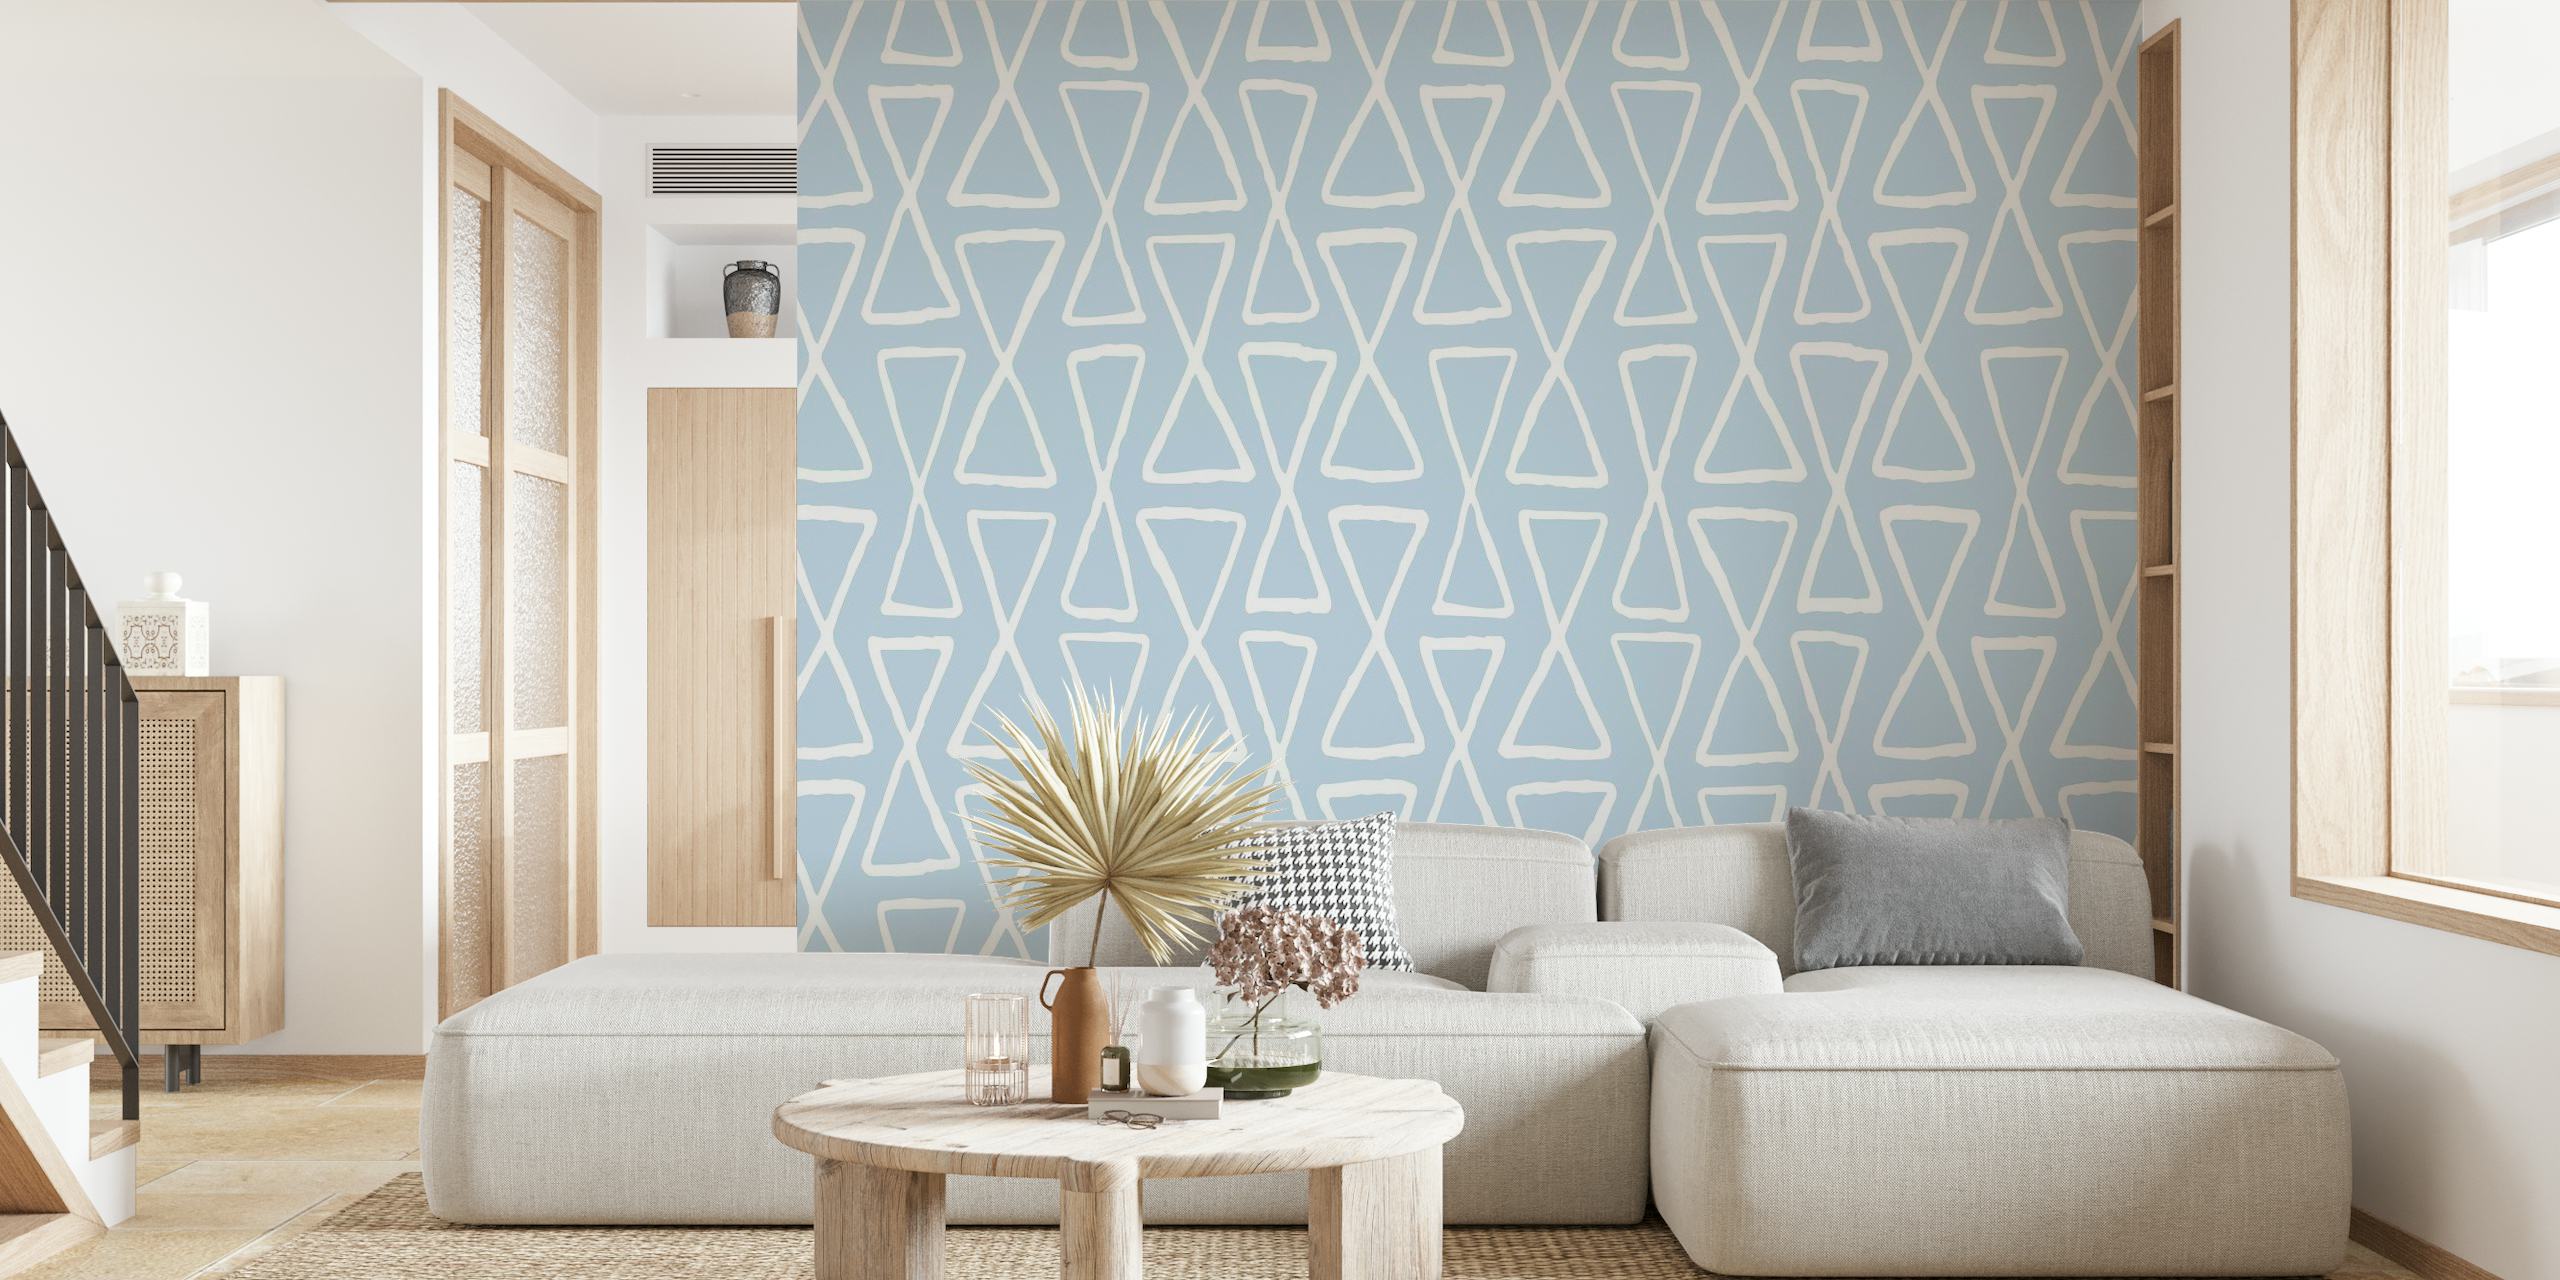 Timeglas hvidt geometrisk mønster på en blå baggrund til vægmaleri